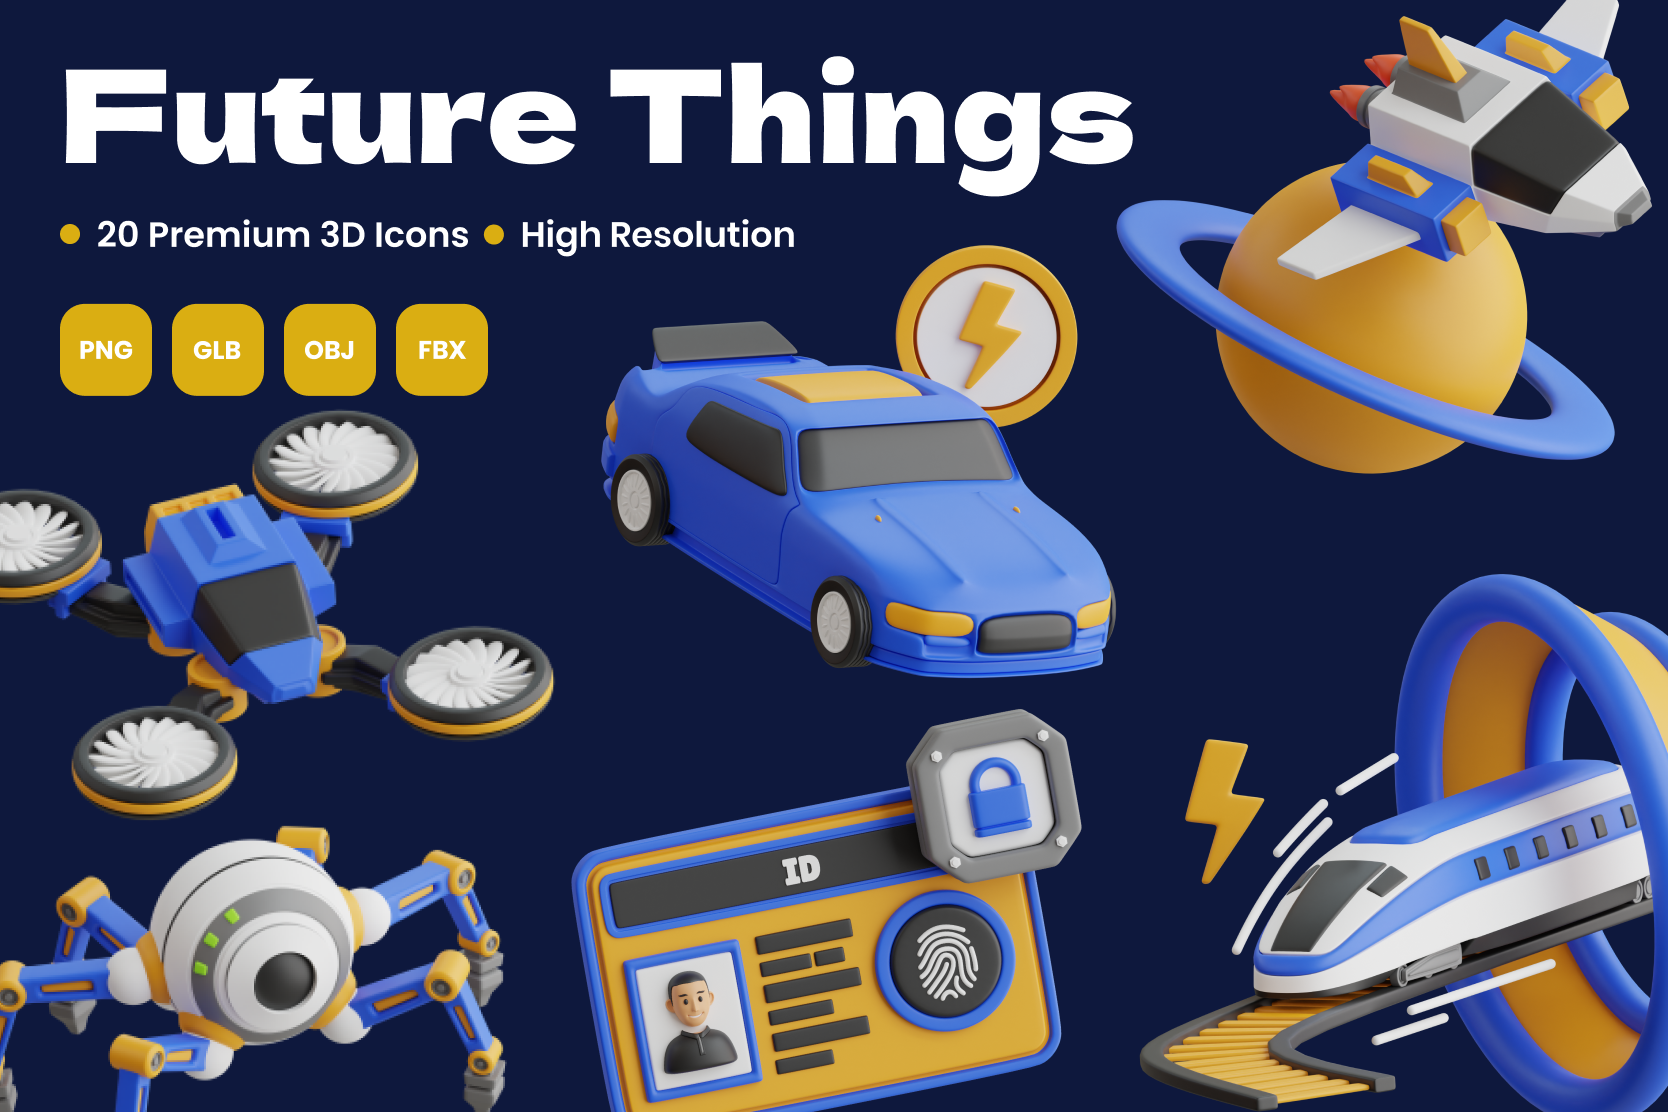 20款未来科幻AI人工智能汽车无人机飞船3D图标Icons设计素材合集 Future Things 3D Icon Pack